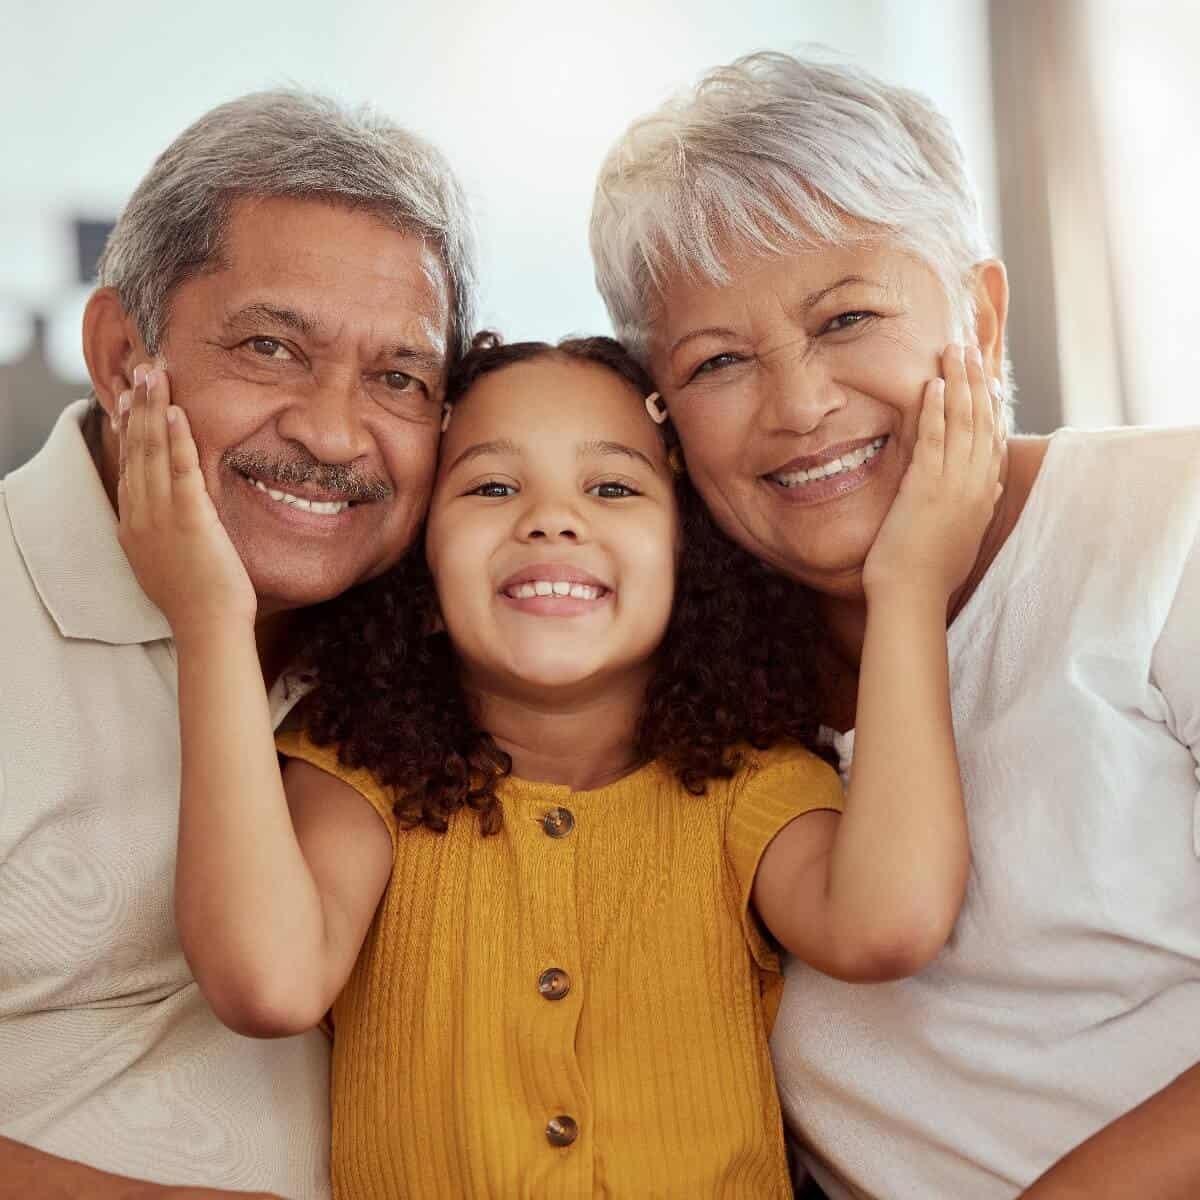 Le droit de l’enfant de maintenir ou développer une relation avec ses grands-parents